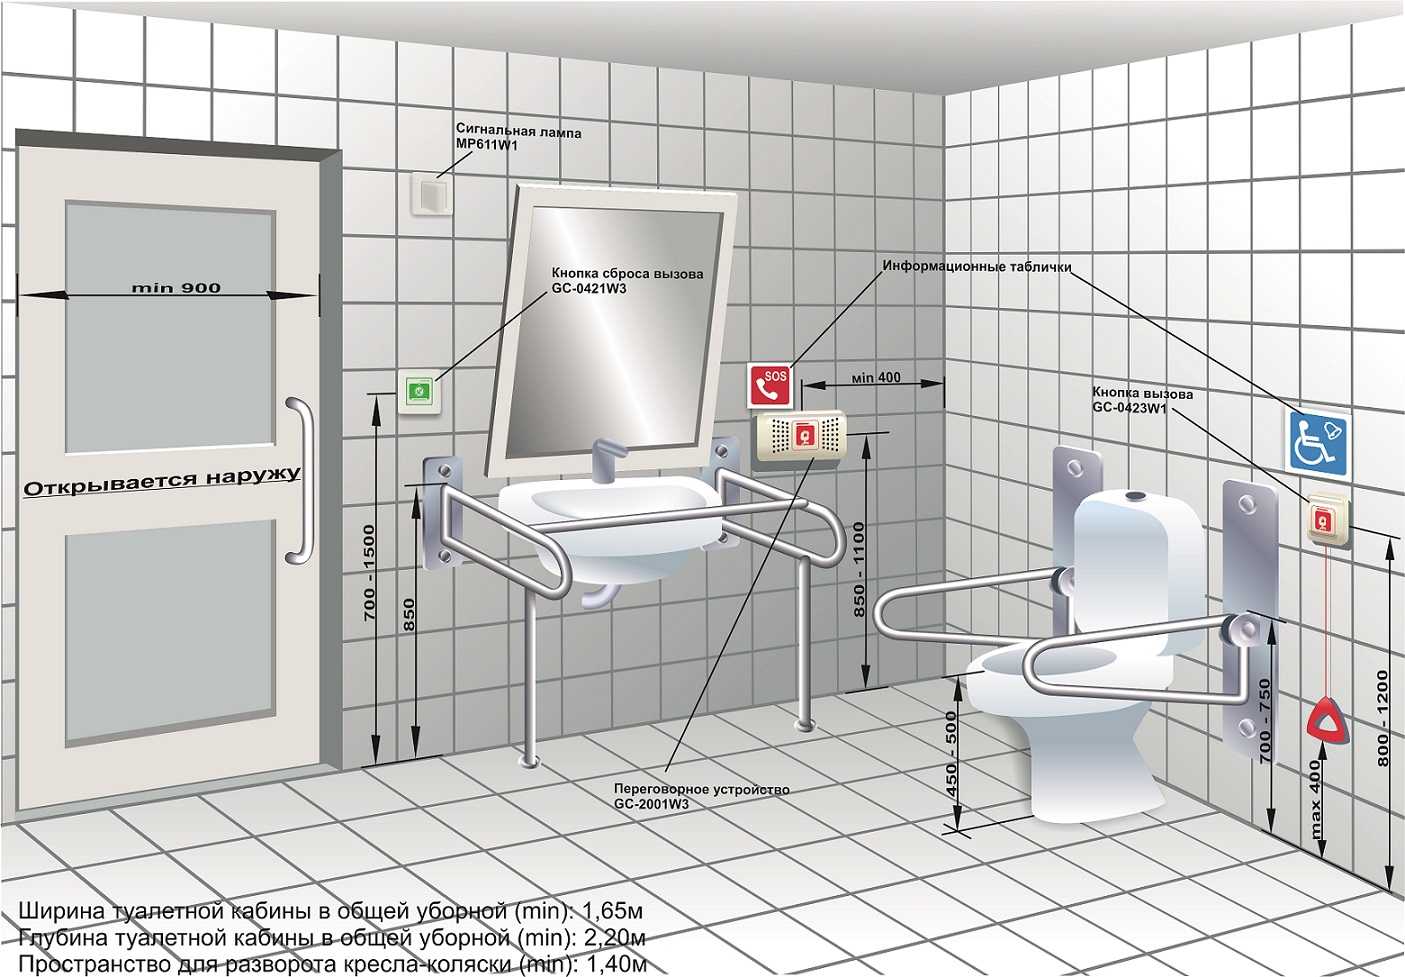 Установка розеток в ванной комнате: нормы безопасности + инструктаж - точка j